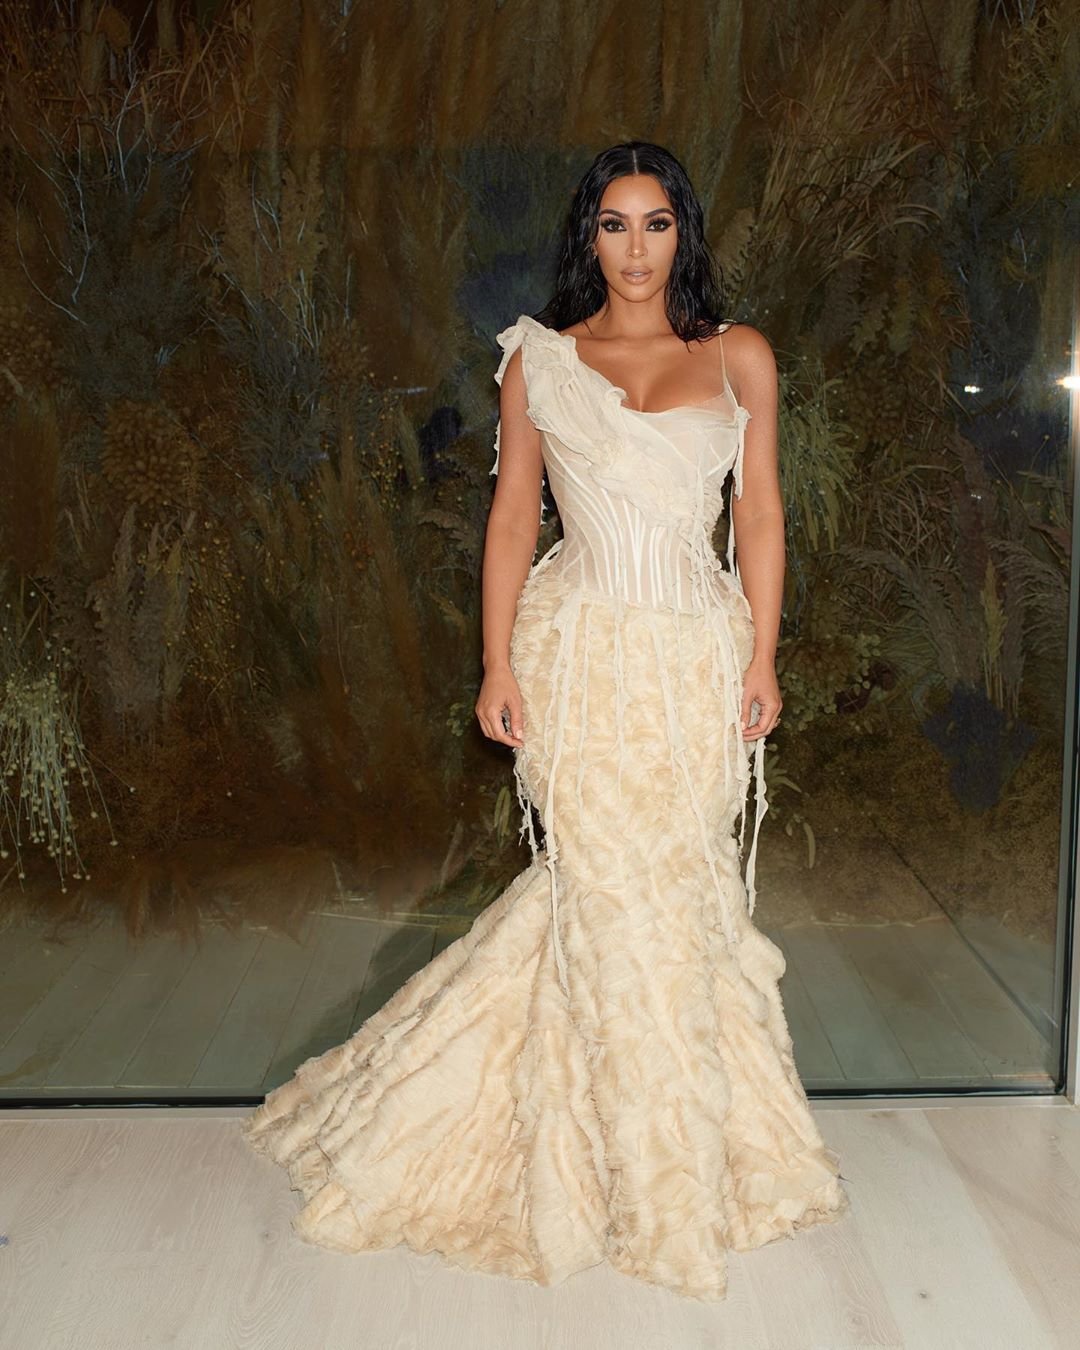 Ким Кардашьян блистала на вечеринке в винтажном платье Alexander McQueen. ФОТО